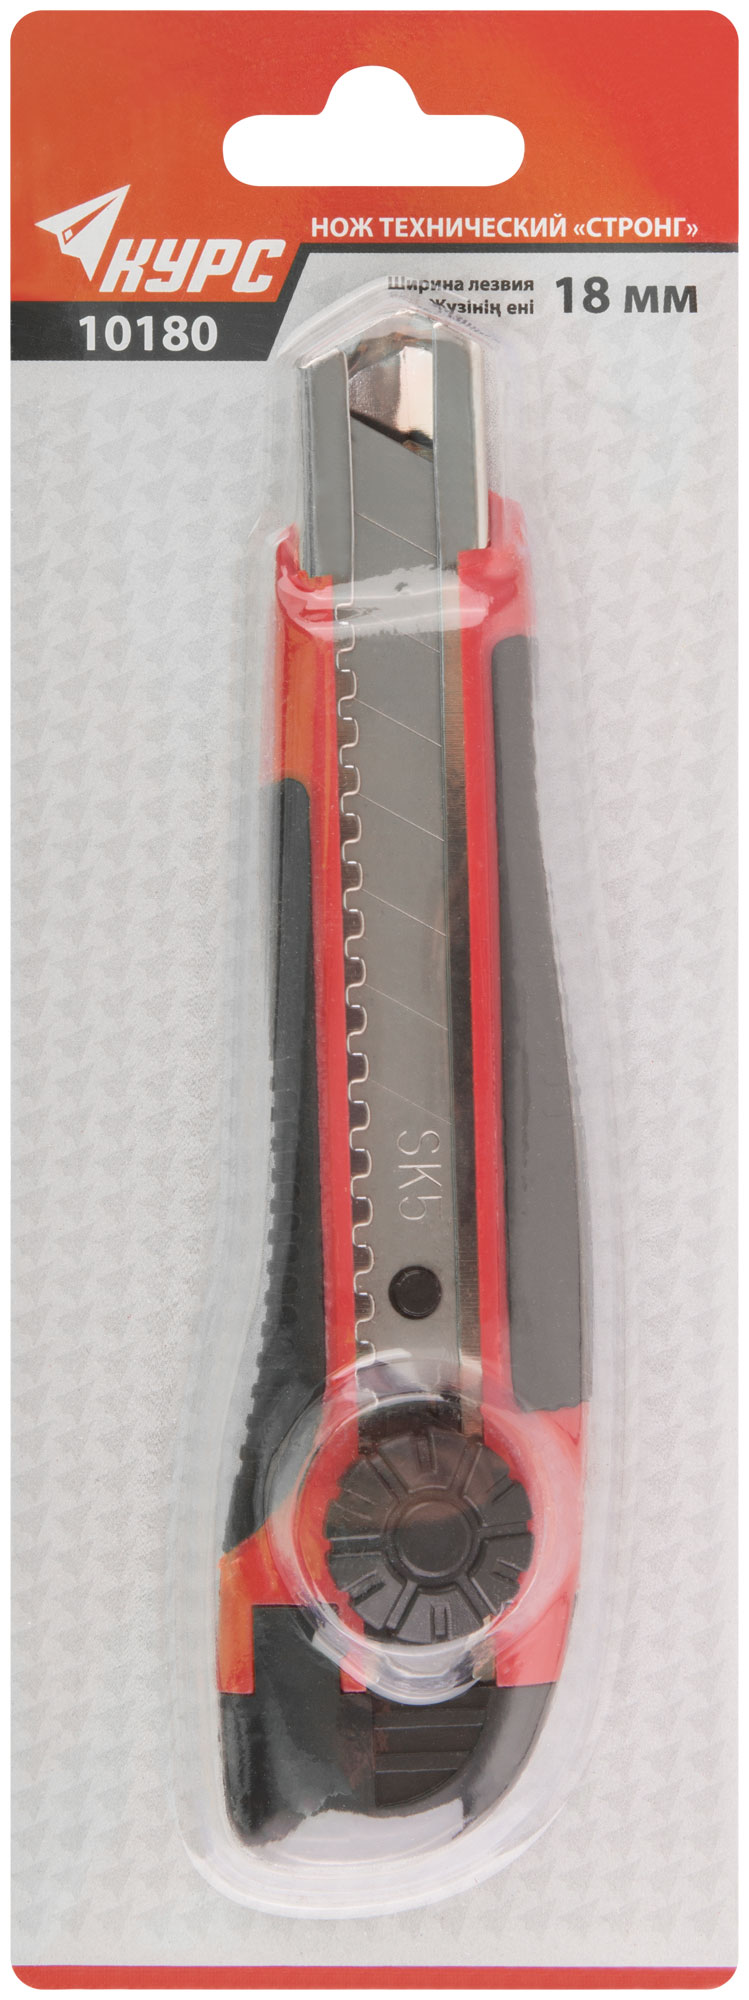 Нож технический "Стронг" 18 мм усиленный, прорезиненный, вращ.прижим